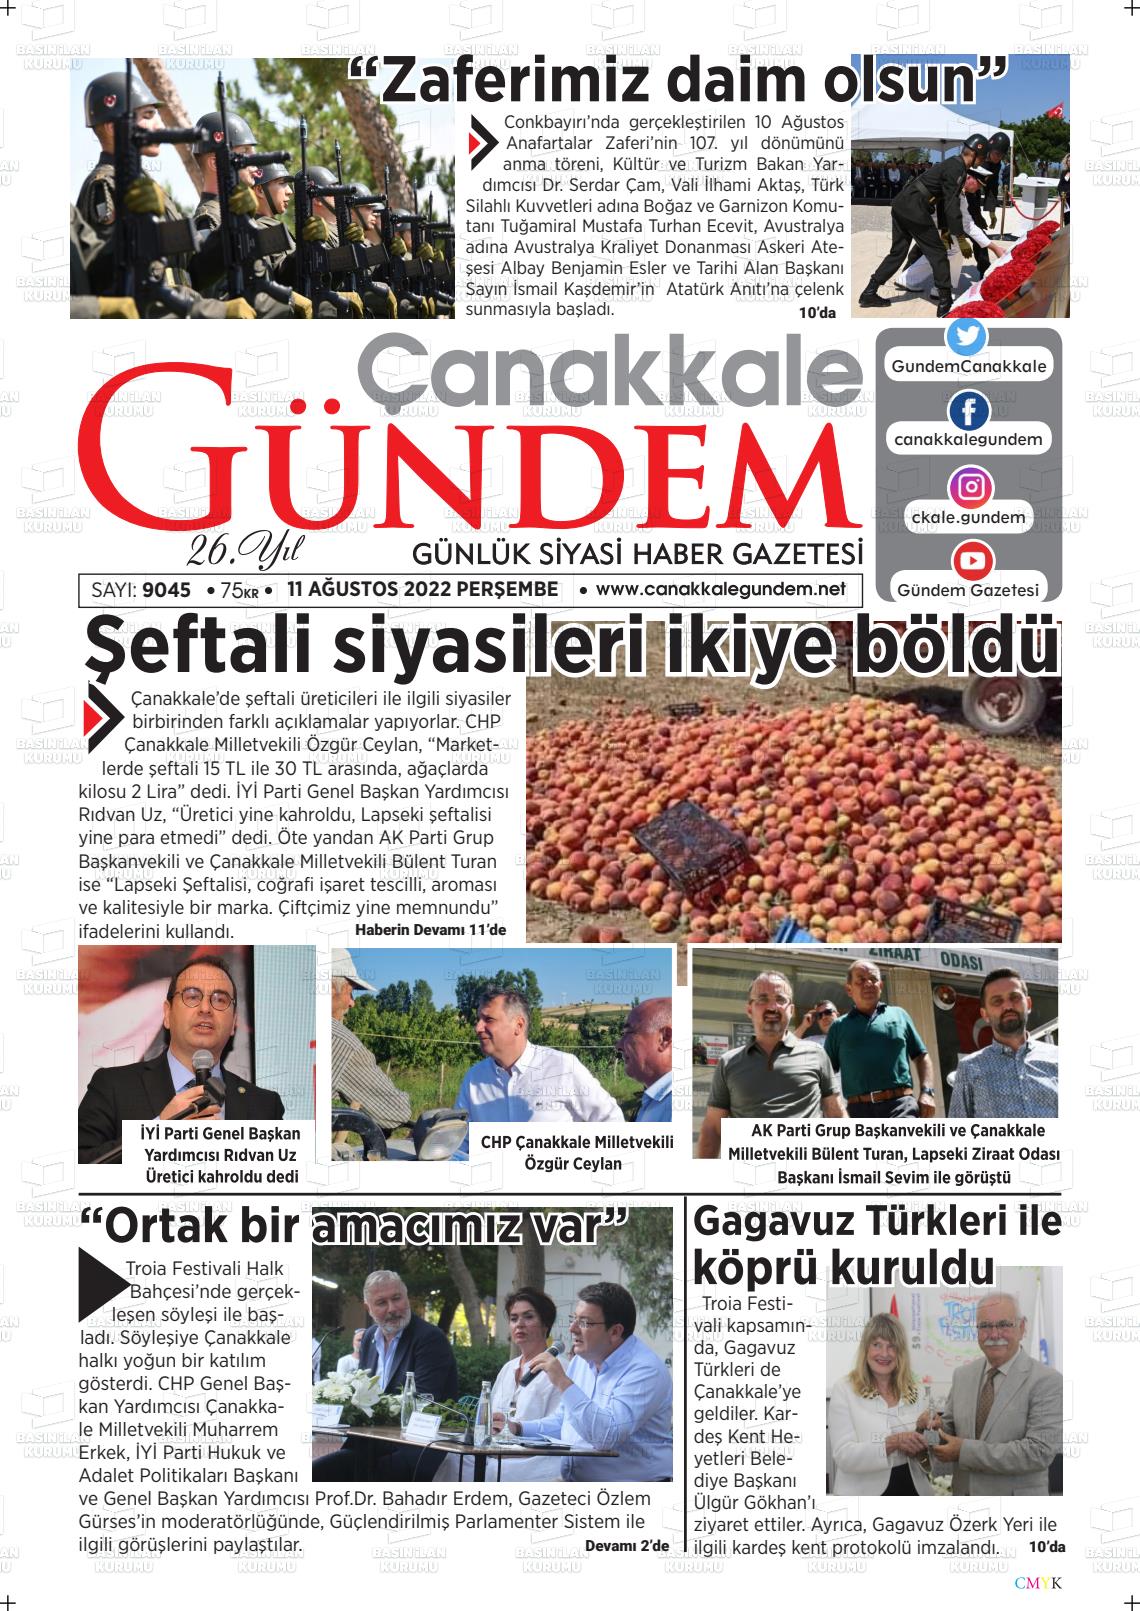 11 Ağustos 2022 Çanakkale Gündem Gazete Manşeti